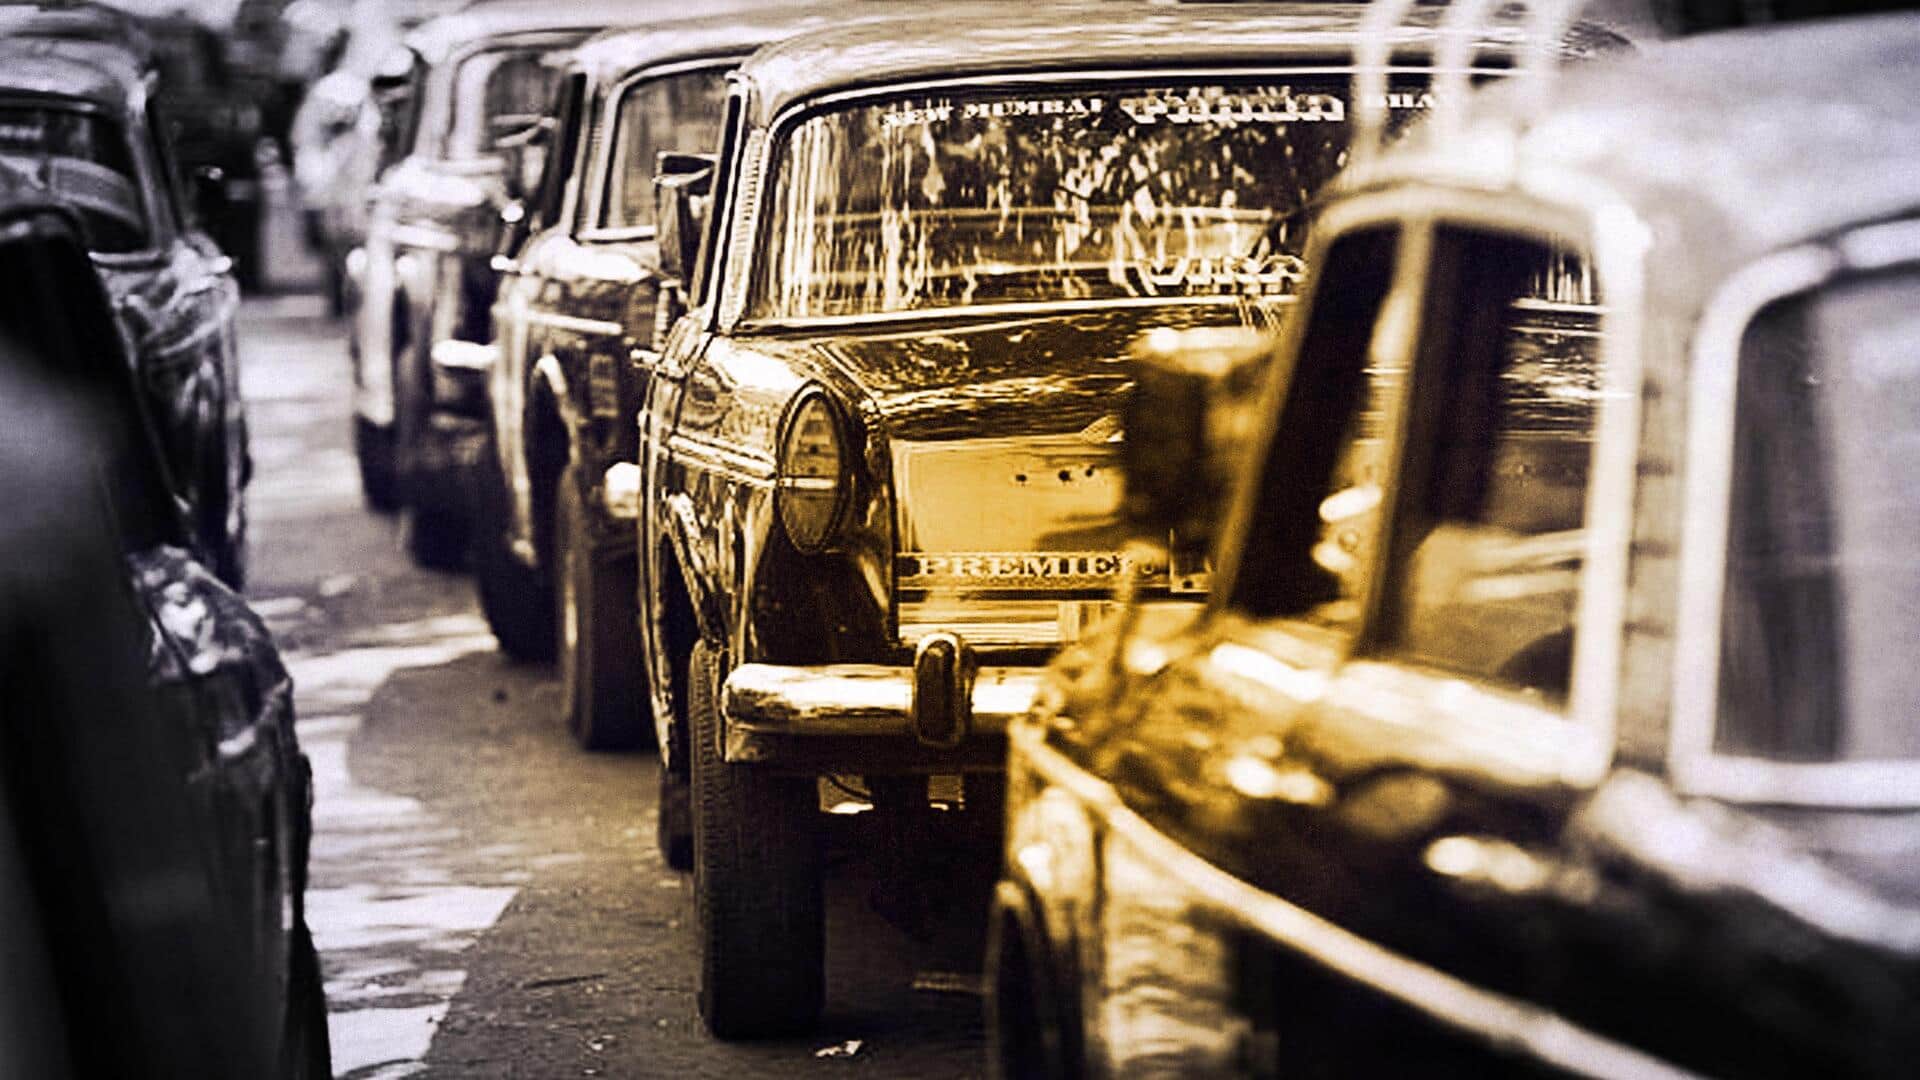 मुंबई की सड़कों पर अब नहीं दिखेगी काली-पीली टैक्सी, जानें अहम बातें